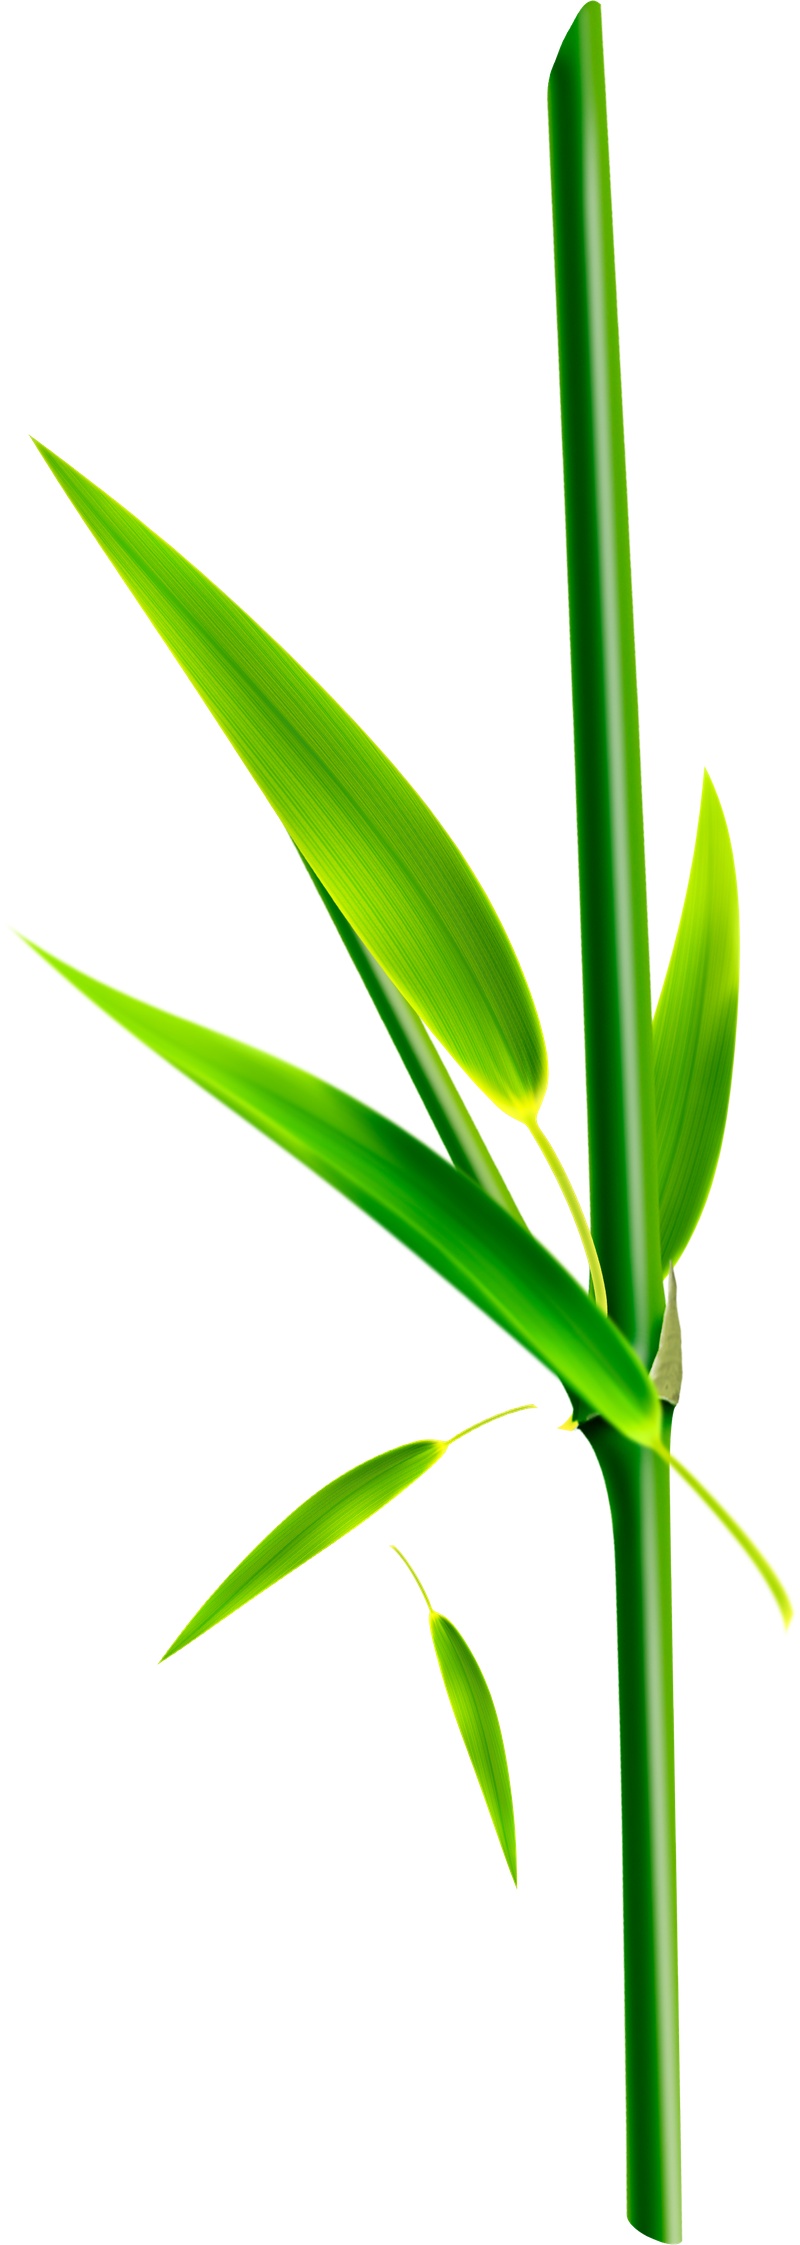 竹叶竹竿植物元素